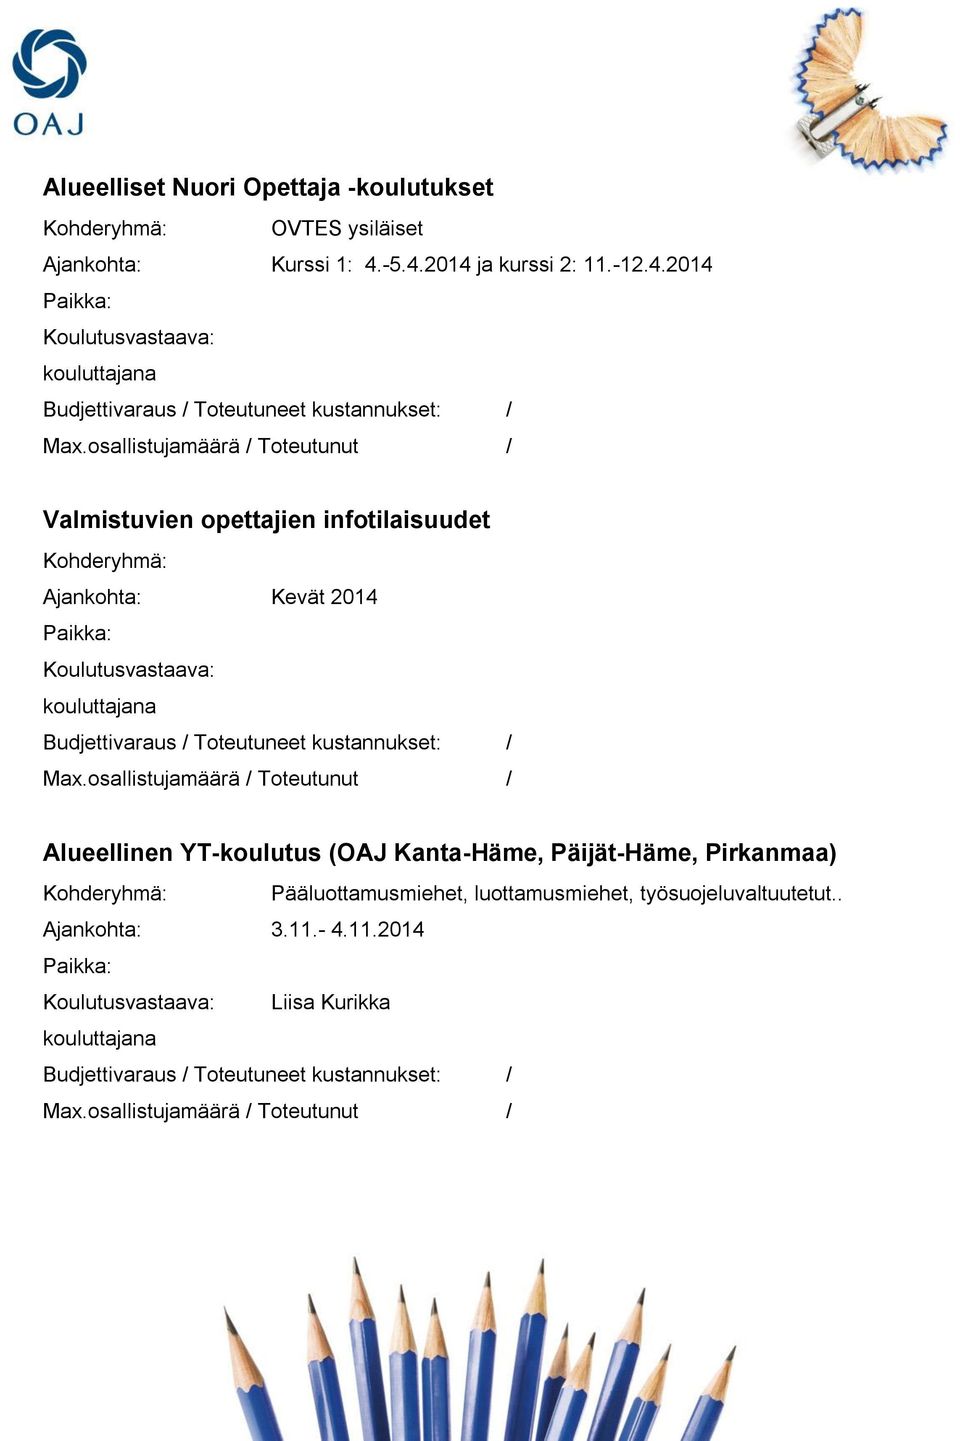 Kohderyhmä: Ajankohta: Kevät 2014 Koulutusvastaava: Budjettivaraus / Toteutuneet kustannukset: / Alueellinen YT-koulutus (OAJ Kanta-Häme,